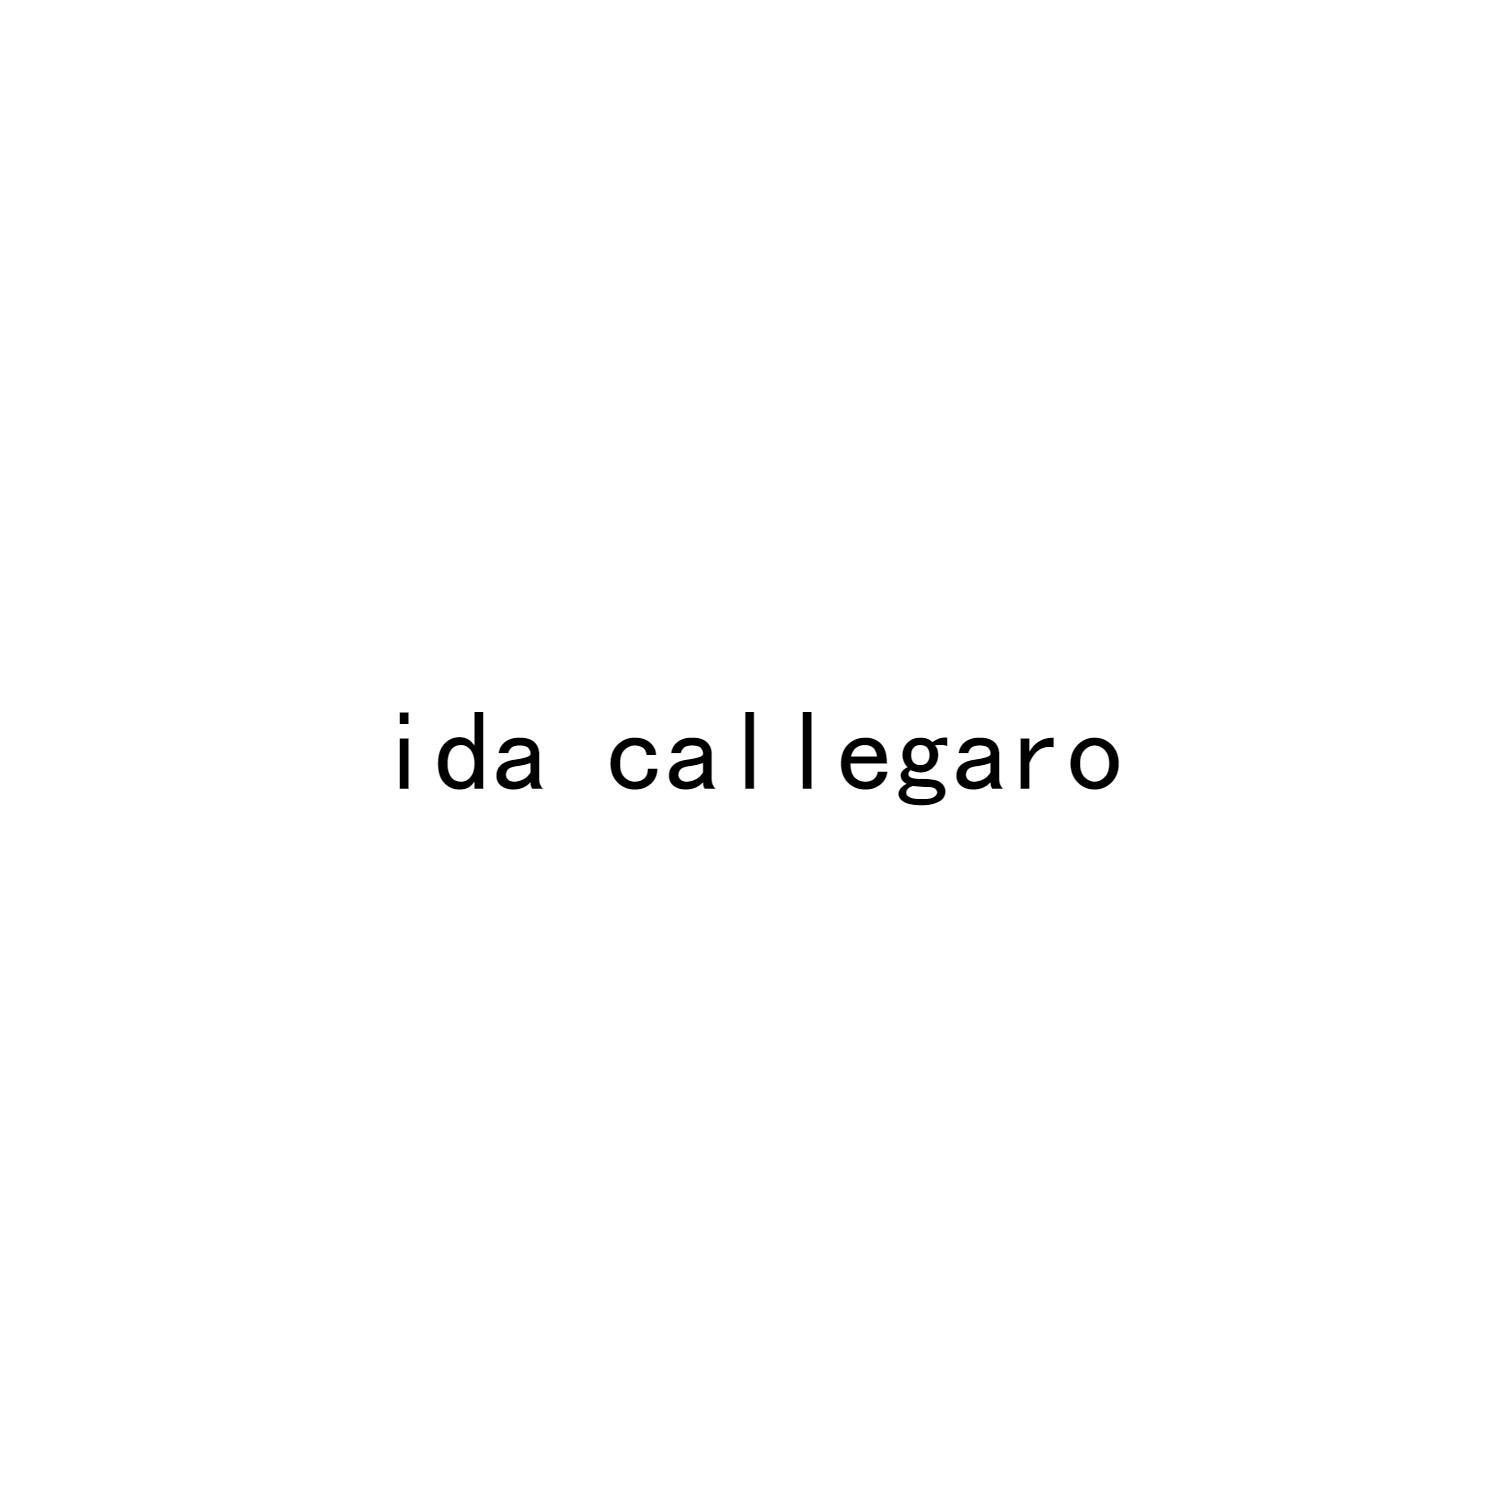 IDA CALLEGARO